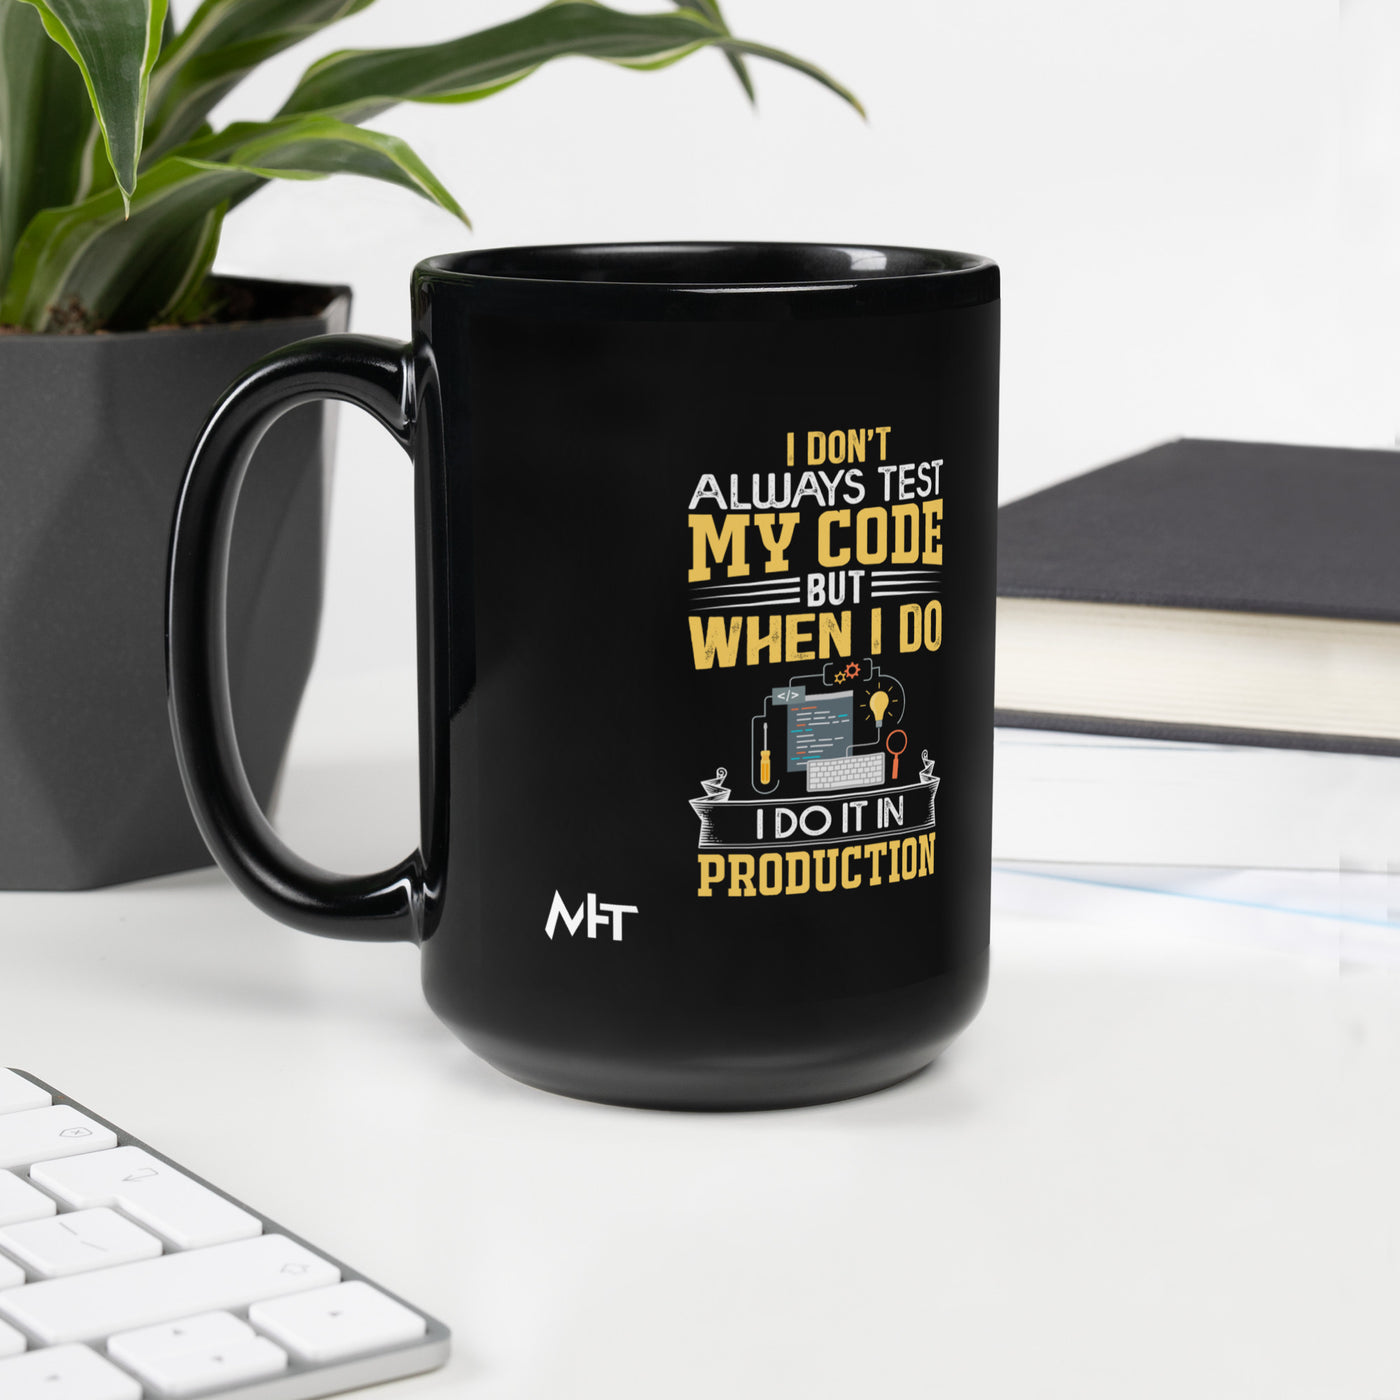 I don't always Test my code V1 - Black Glossy Mug